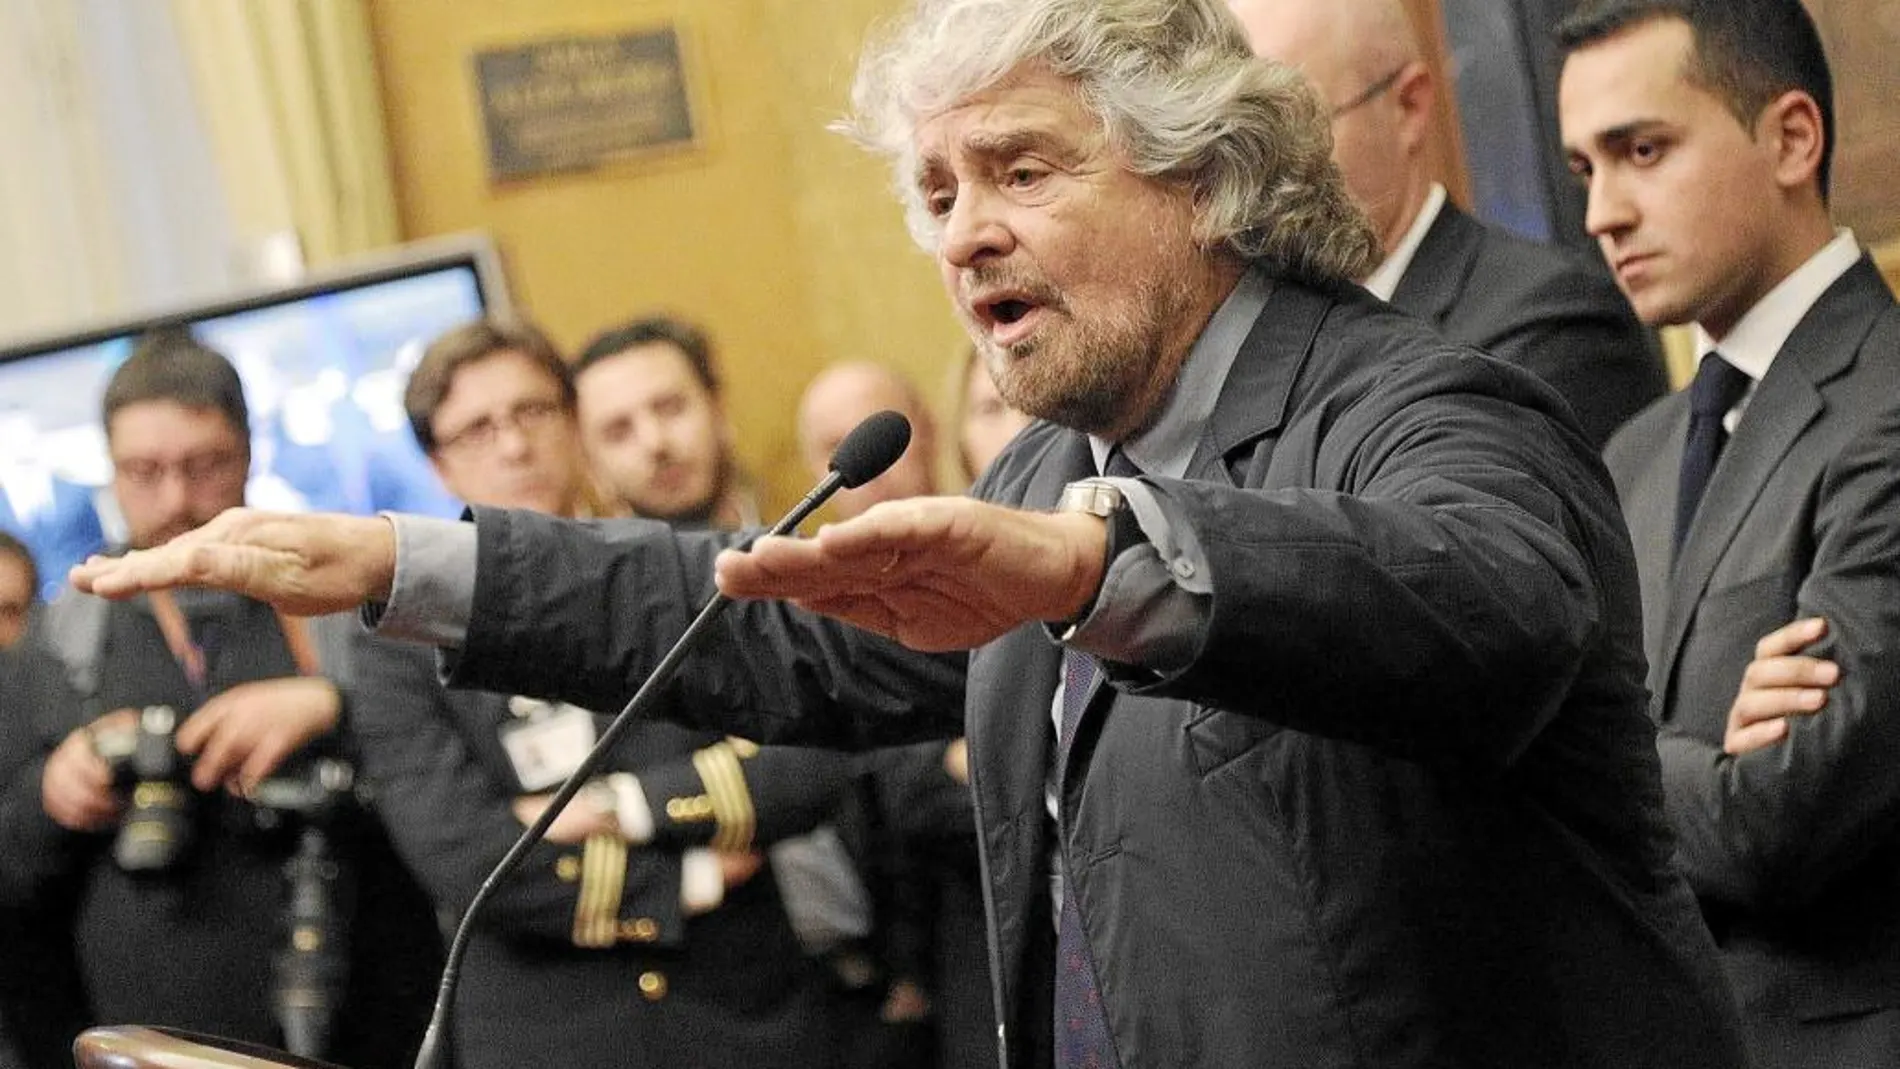 Grillo ya con traje, en una rueda de prensa tras un encuentro con Matteo Renzi, el encargado de formar el nuevo Gobierno